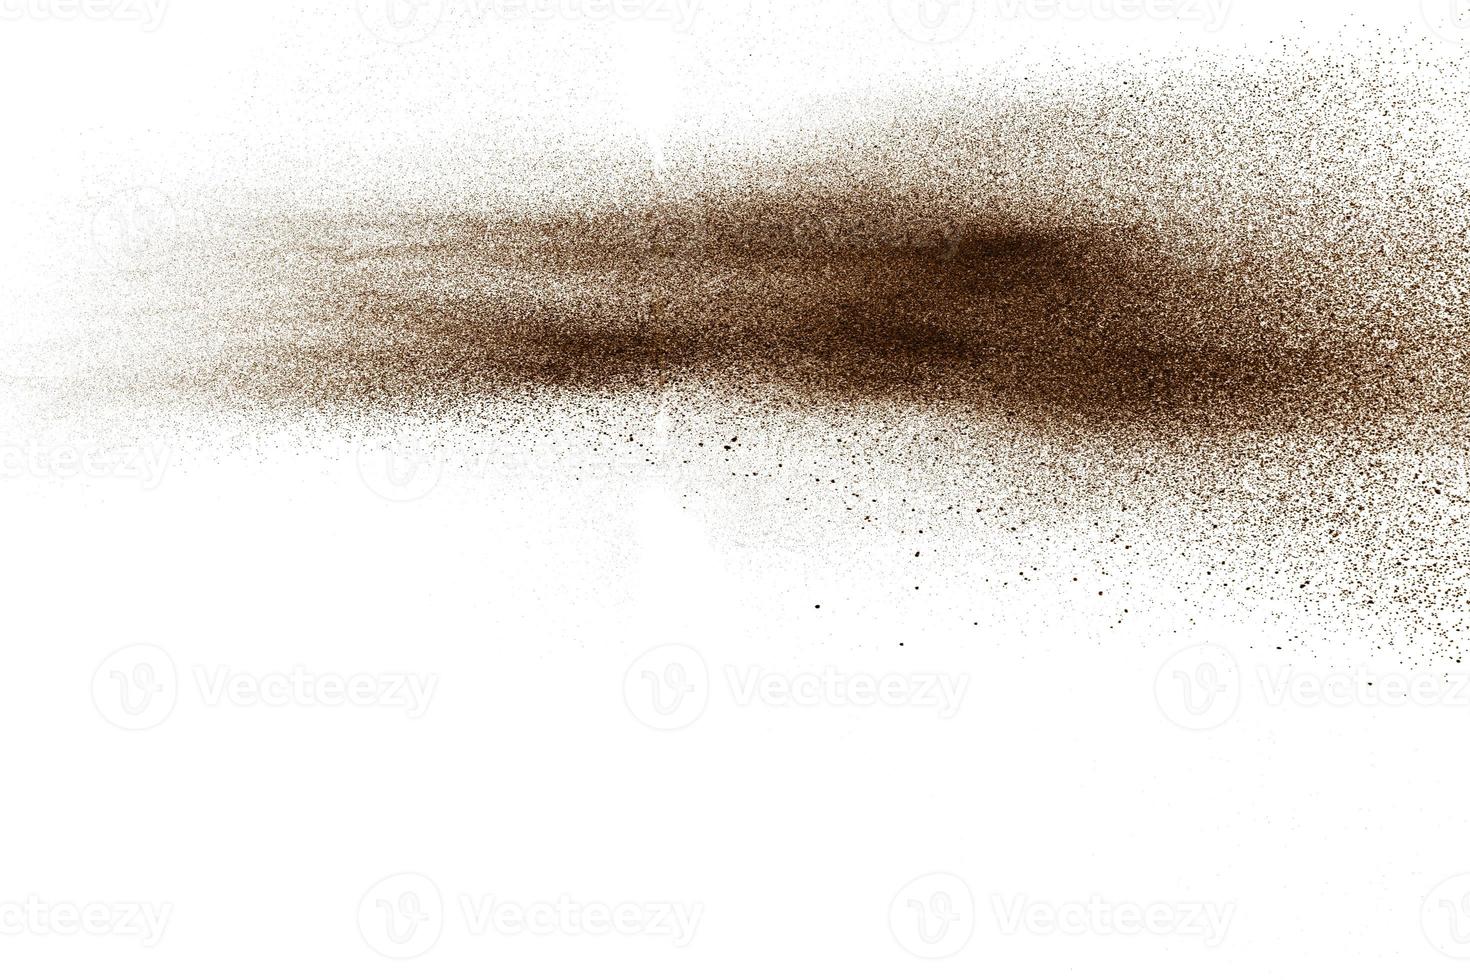 diepbruine deeltjes spetterde op een witte achtergrond. bruine stofspatten. foto